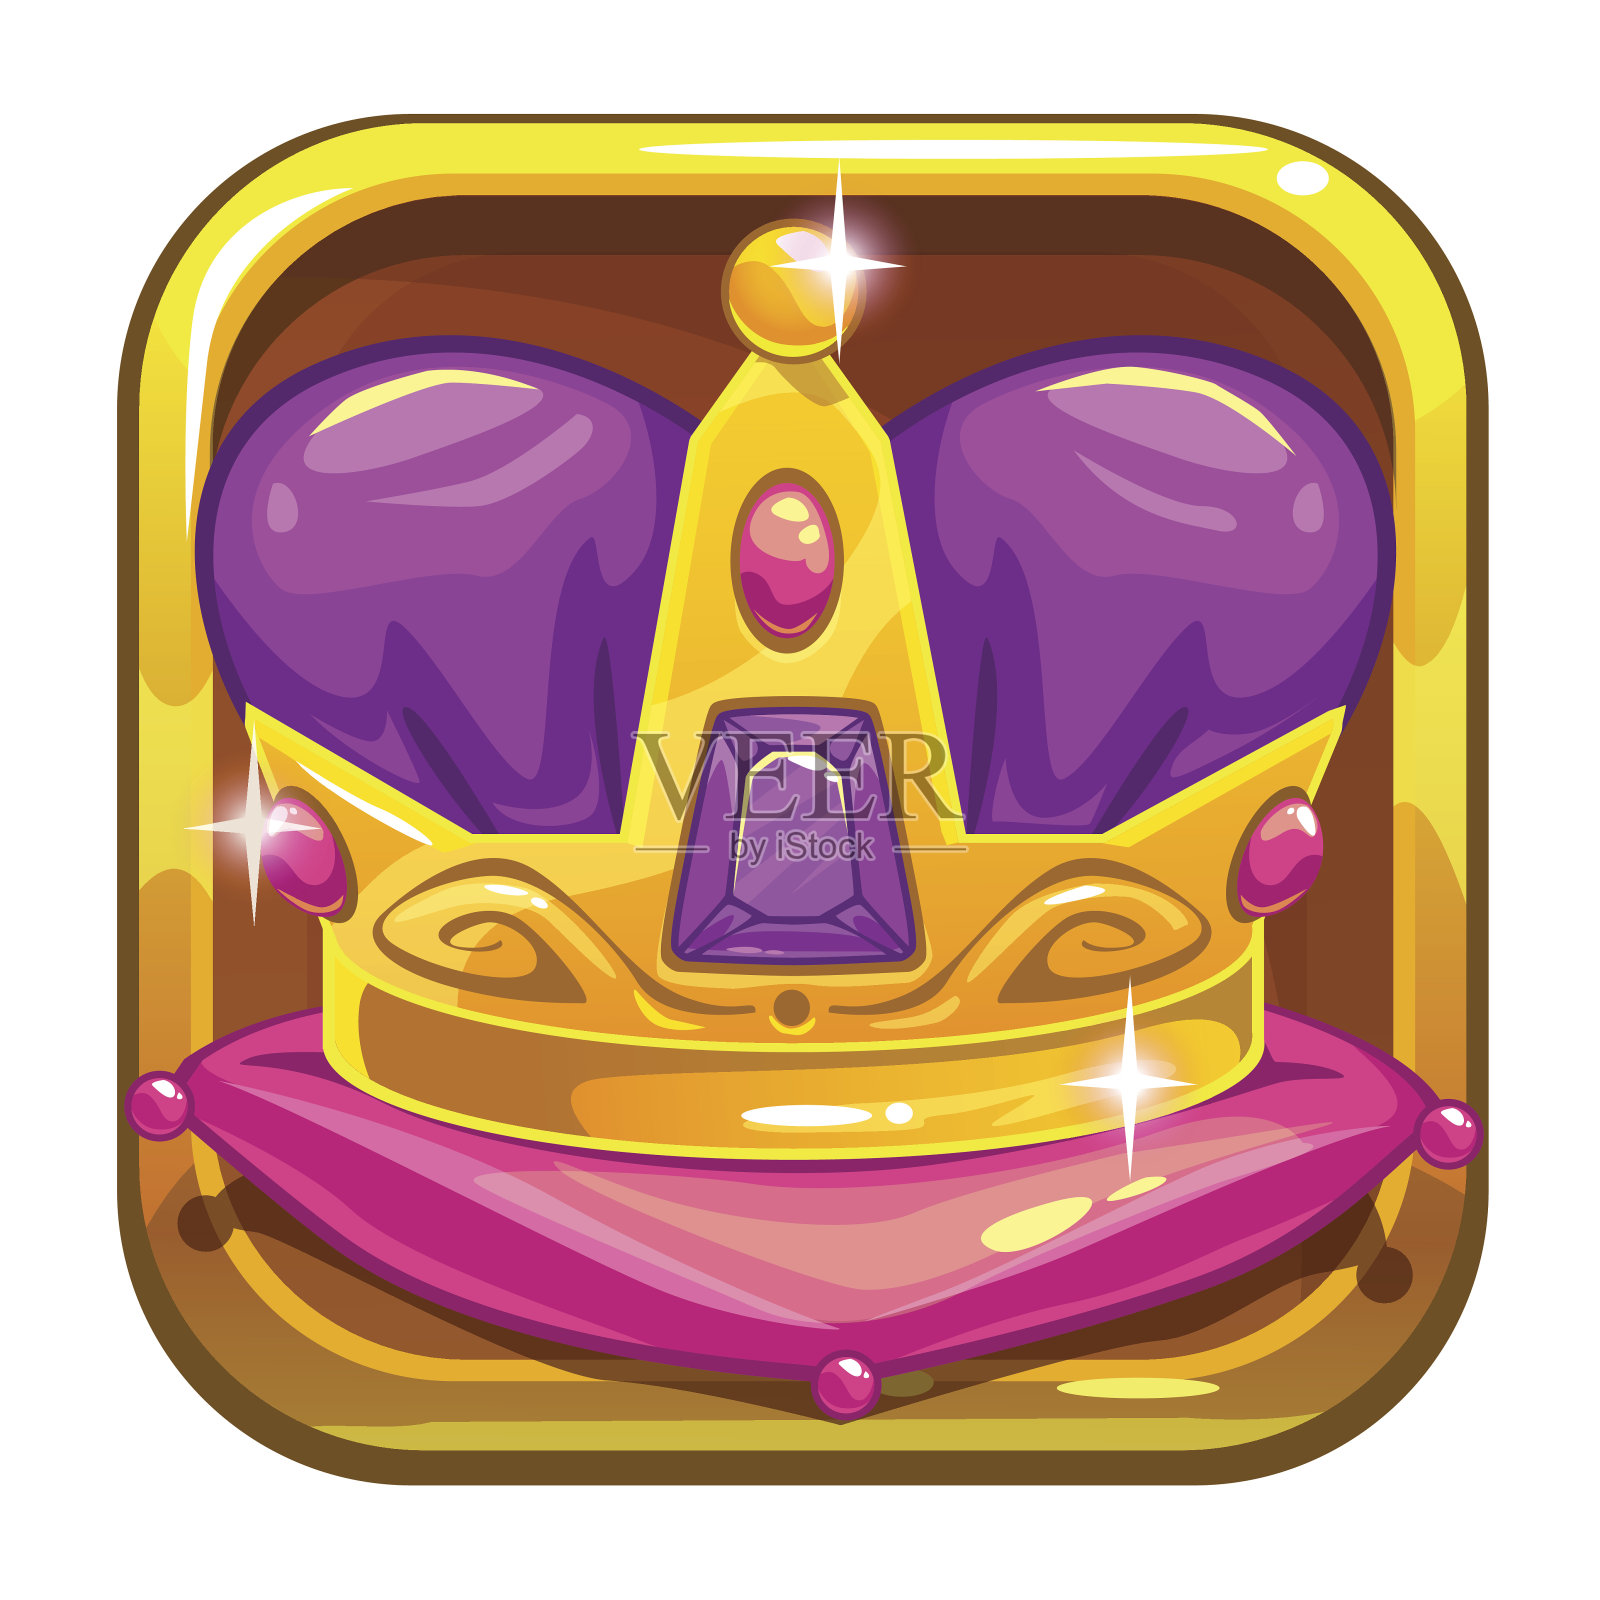 向量应用程序图标模板与黄金国王皇冠插画图片素材